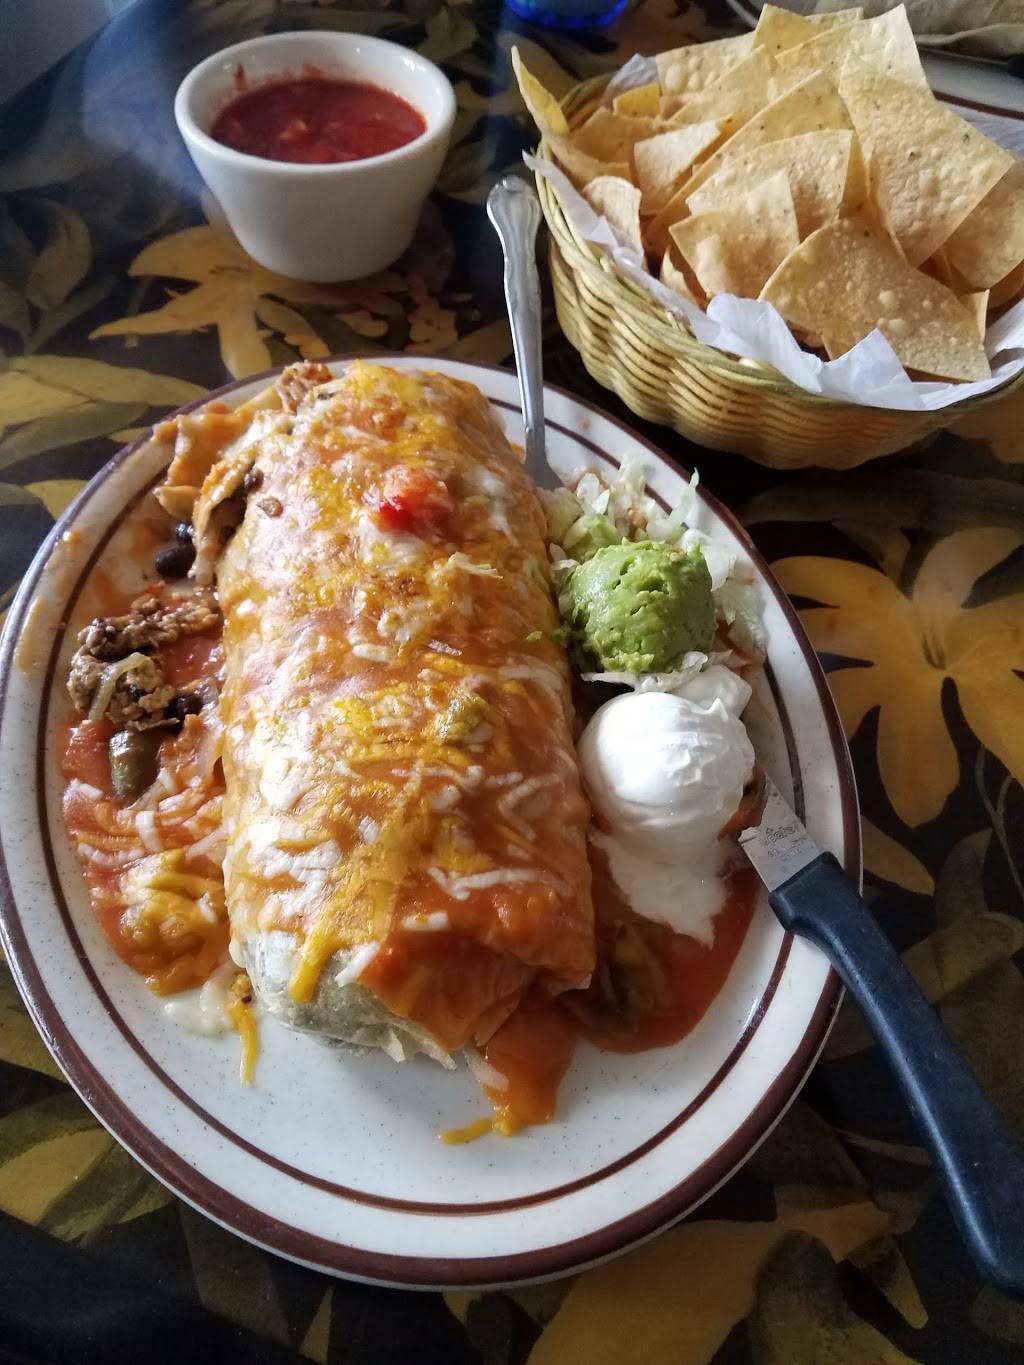 Casa Brito Mexican Food Restaurant | 6618 Westminster Blvd, Westminster, CA 92683, USA | Phone: (714) 891-7513